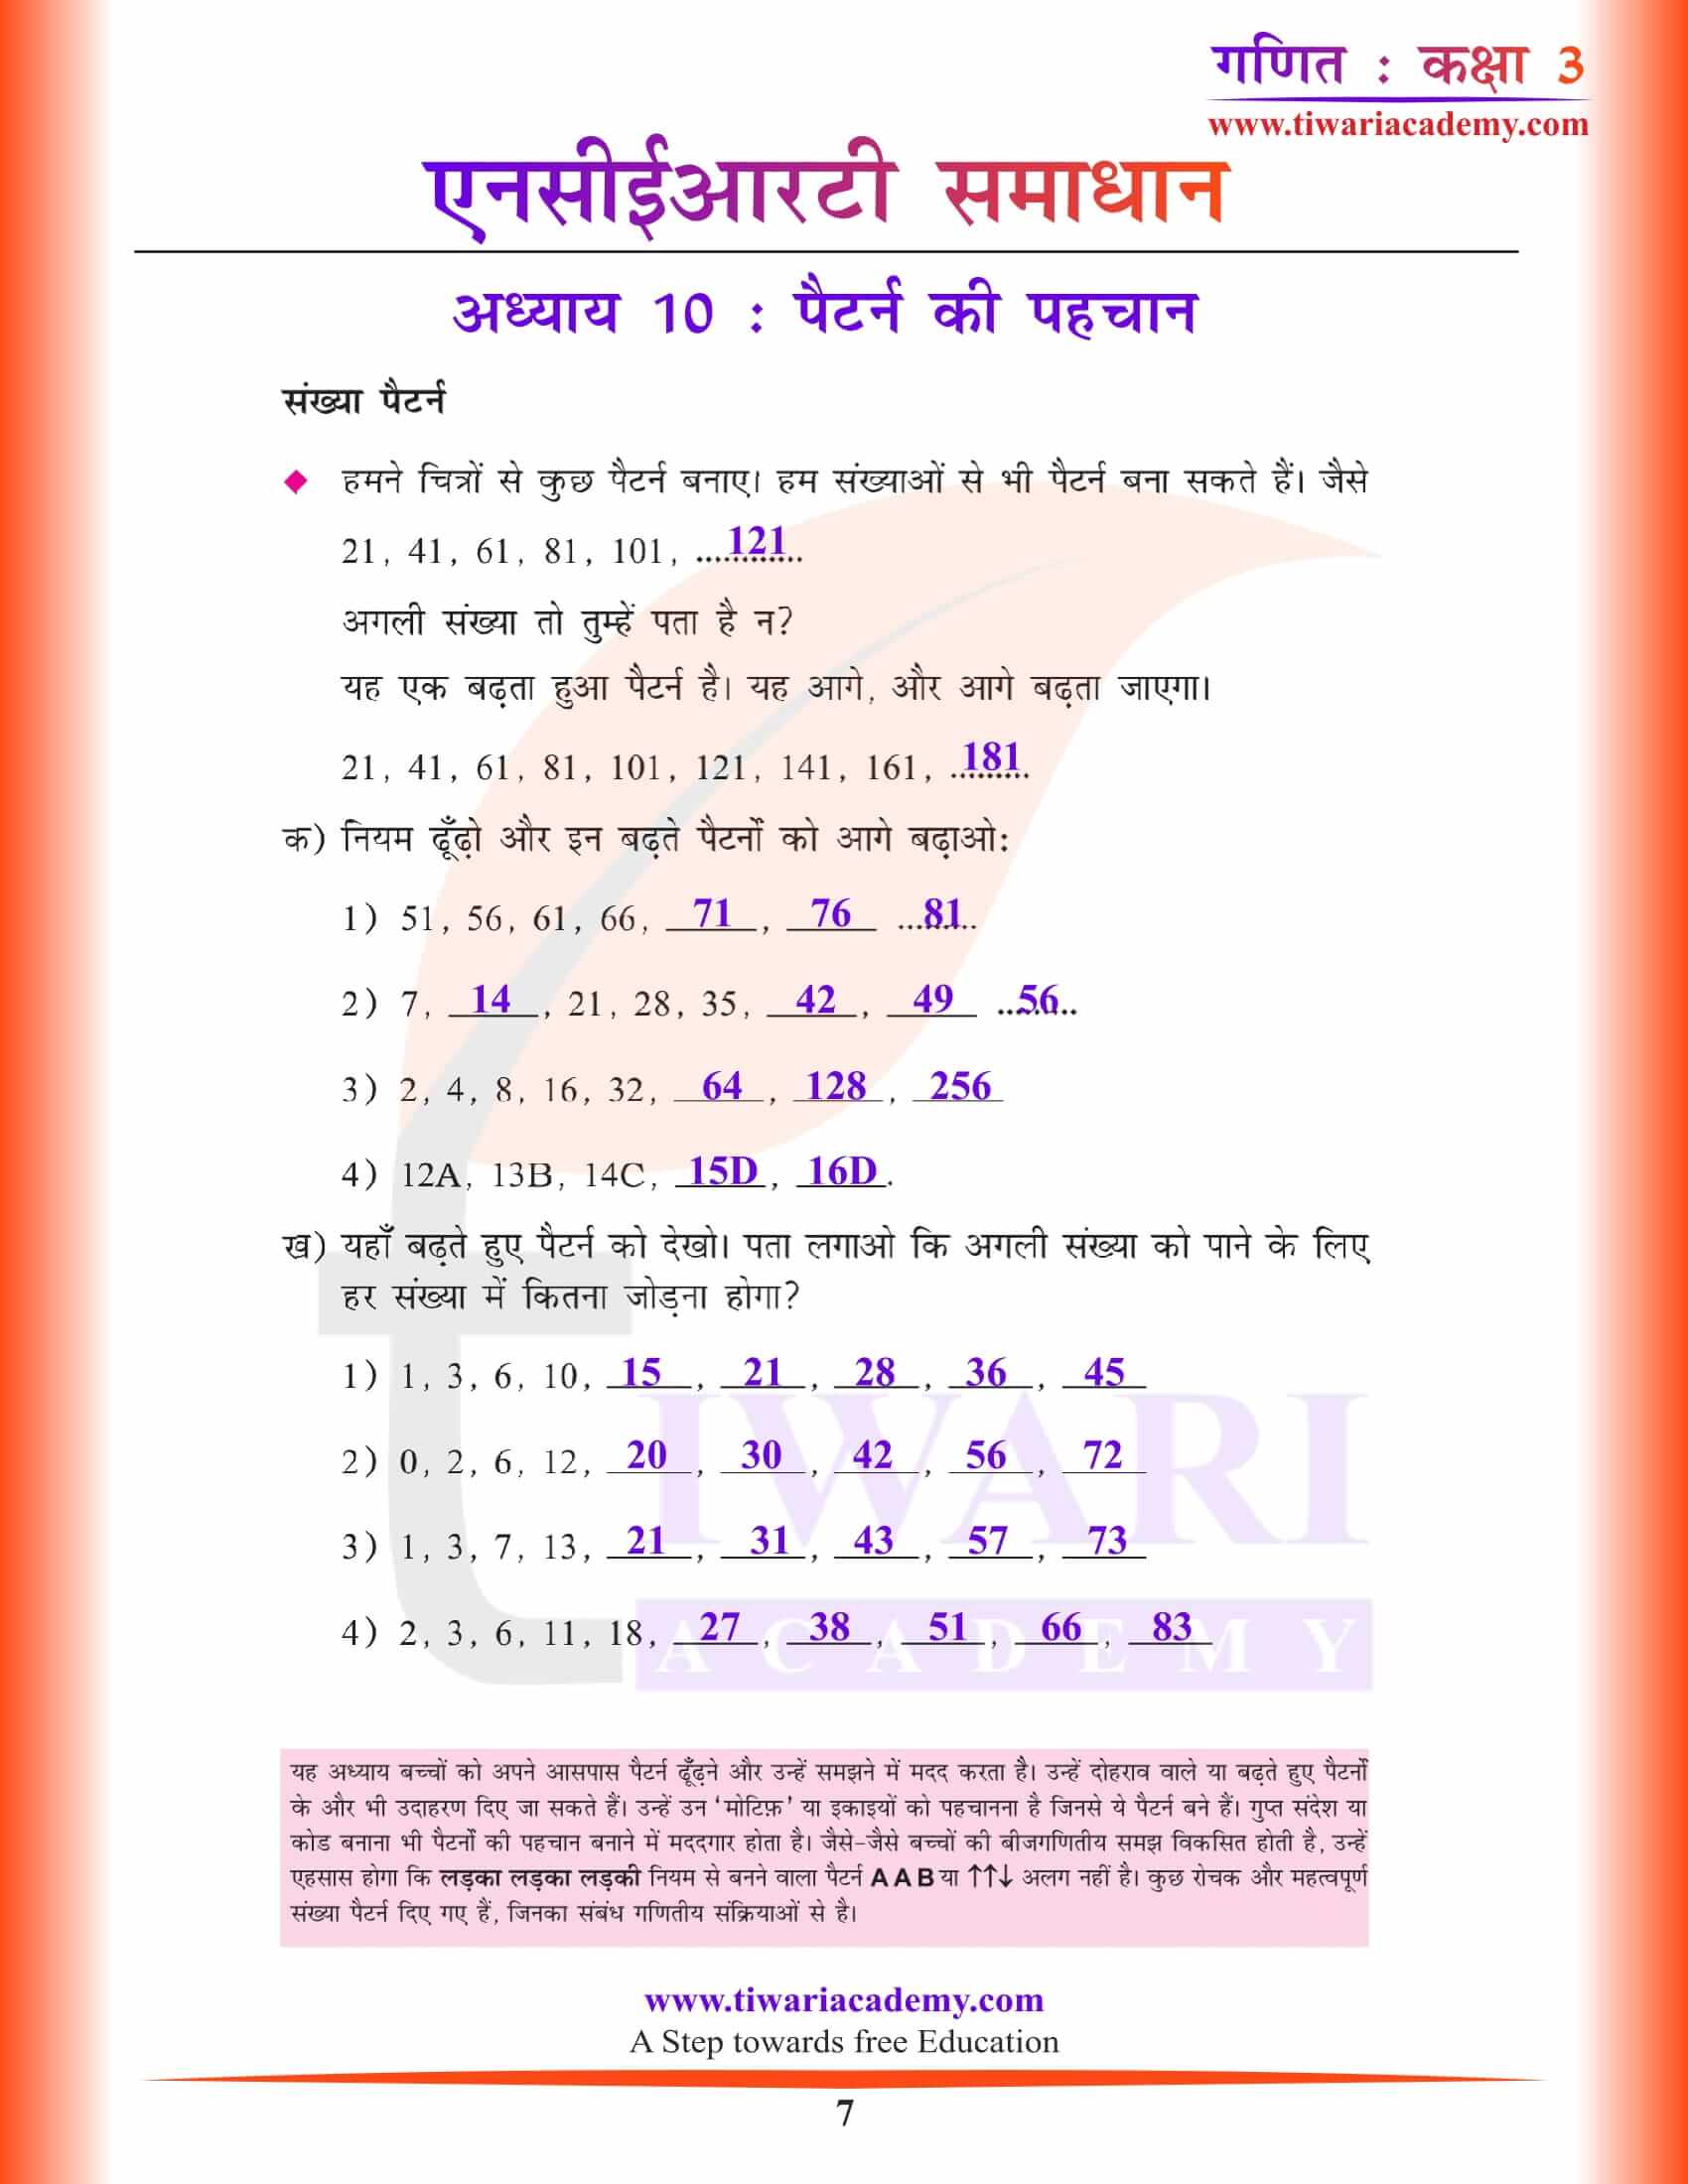 एनसीईआरटी समाधान कक्षा 3 गणित अध्याय 10 प्रश्नों के हल हिंदी में